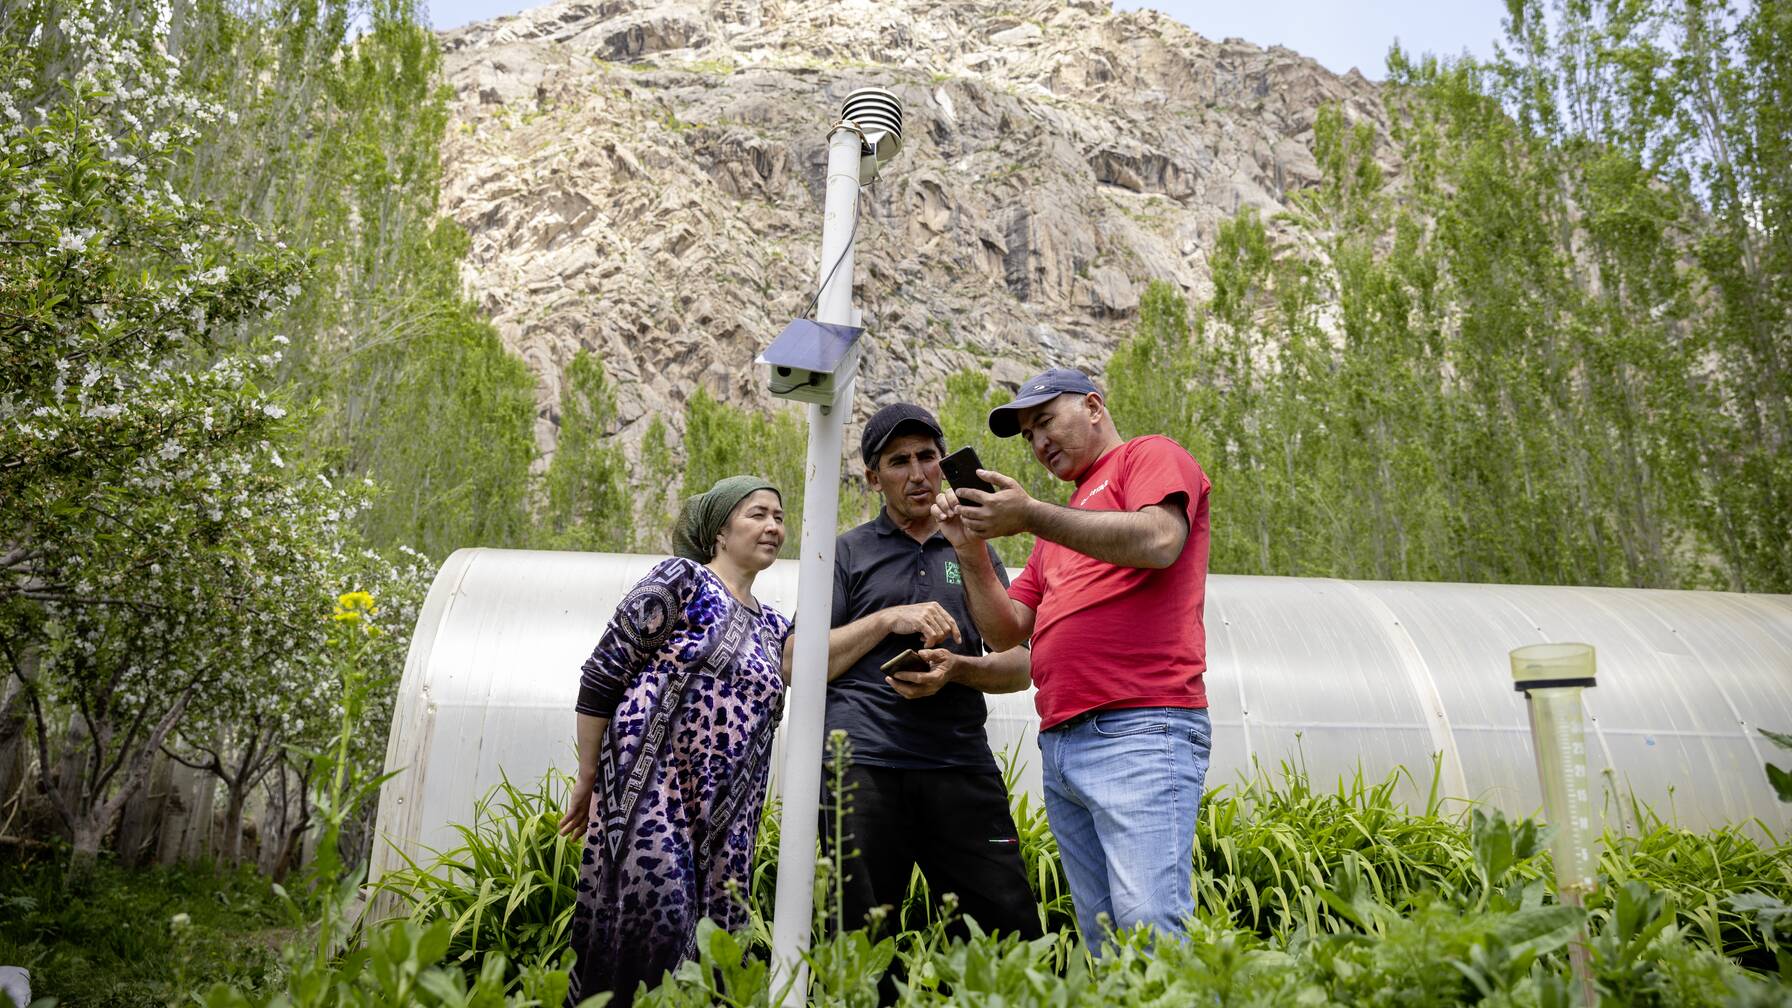 Travailler avec le climat plutôt que contre lui: telle est la devise de nos projets au Tadjikistan. Des stations météorologiques, dont certaines sont installées dans les jardins des familles de paysans, fournissent de précieuses données à la population.